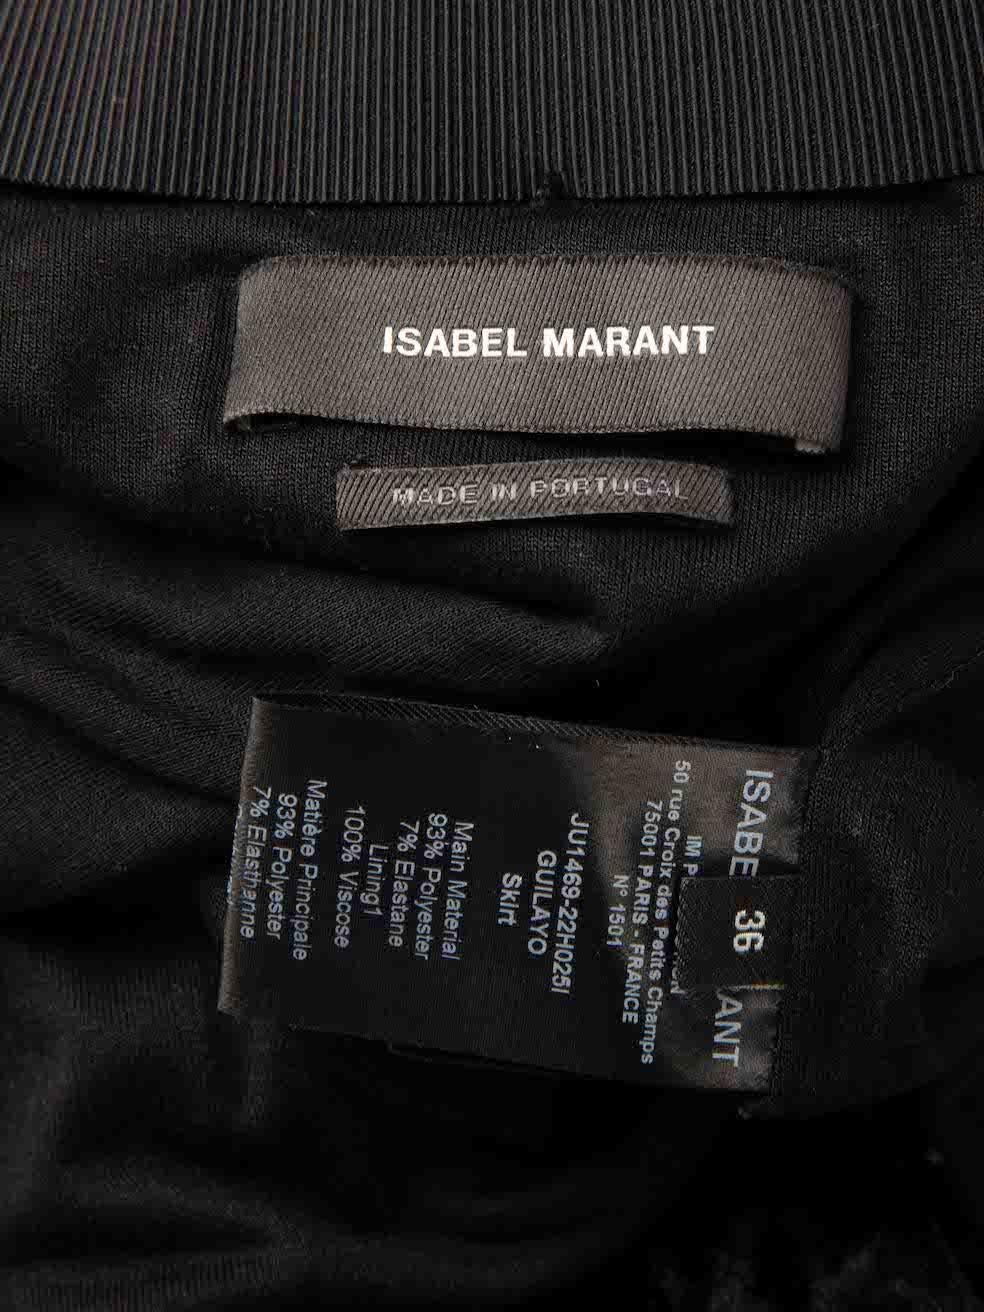 Isabel Marant Black Velvet Ruched Mini Skirt Size S For Sale 2